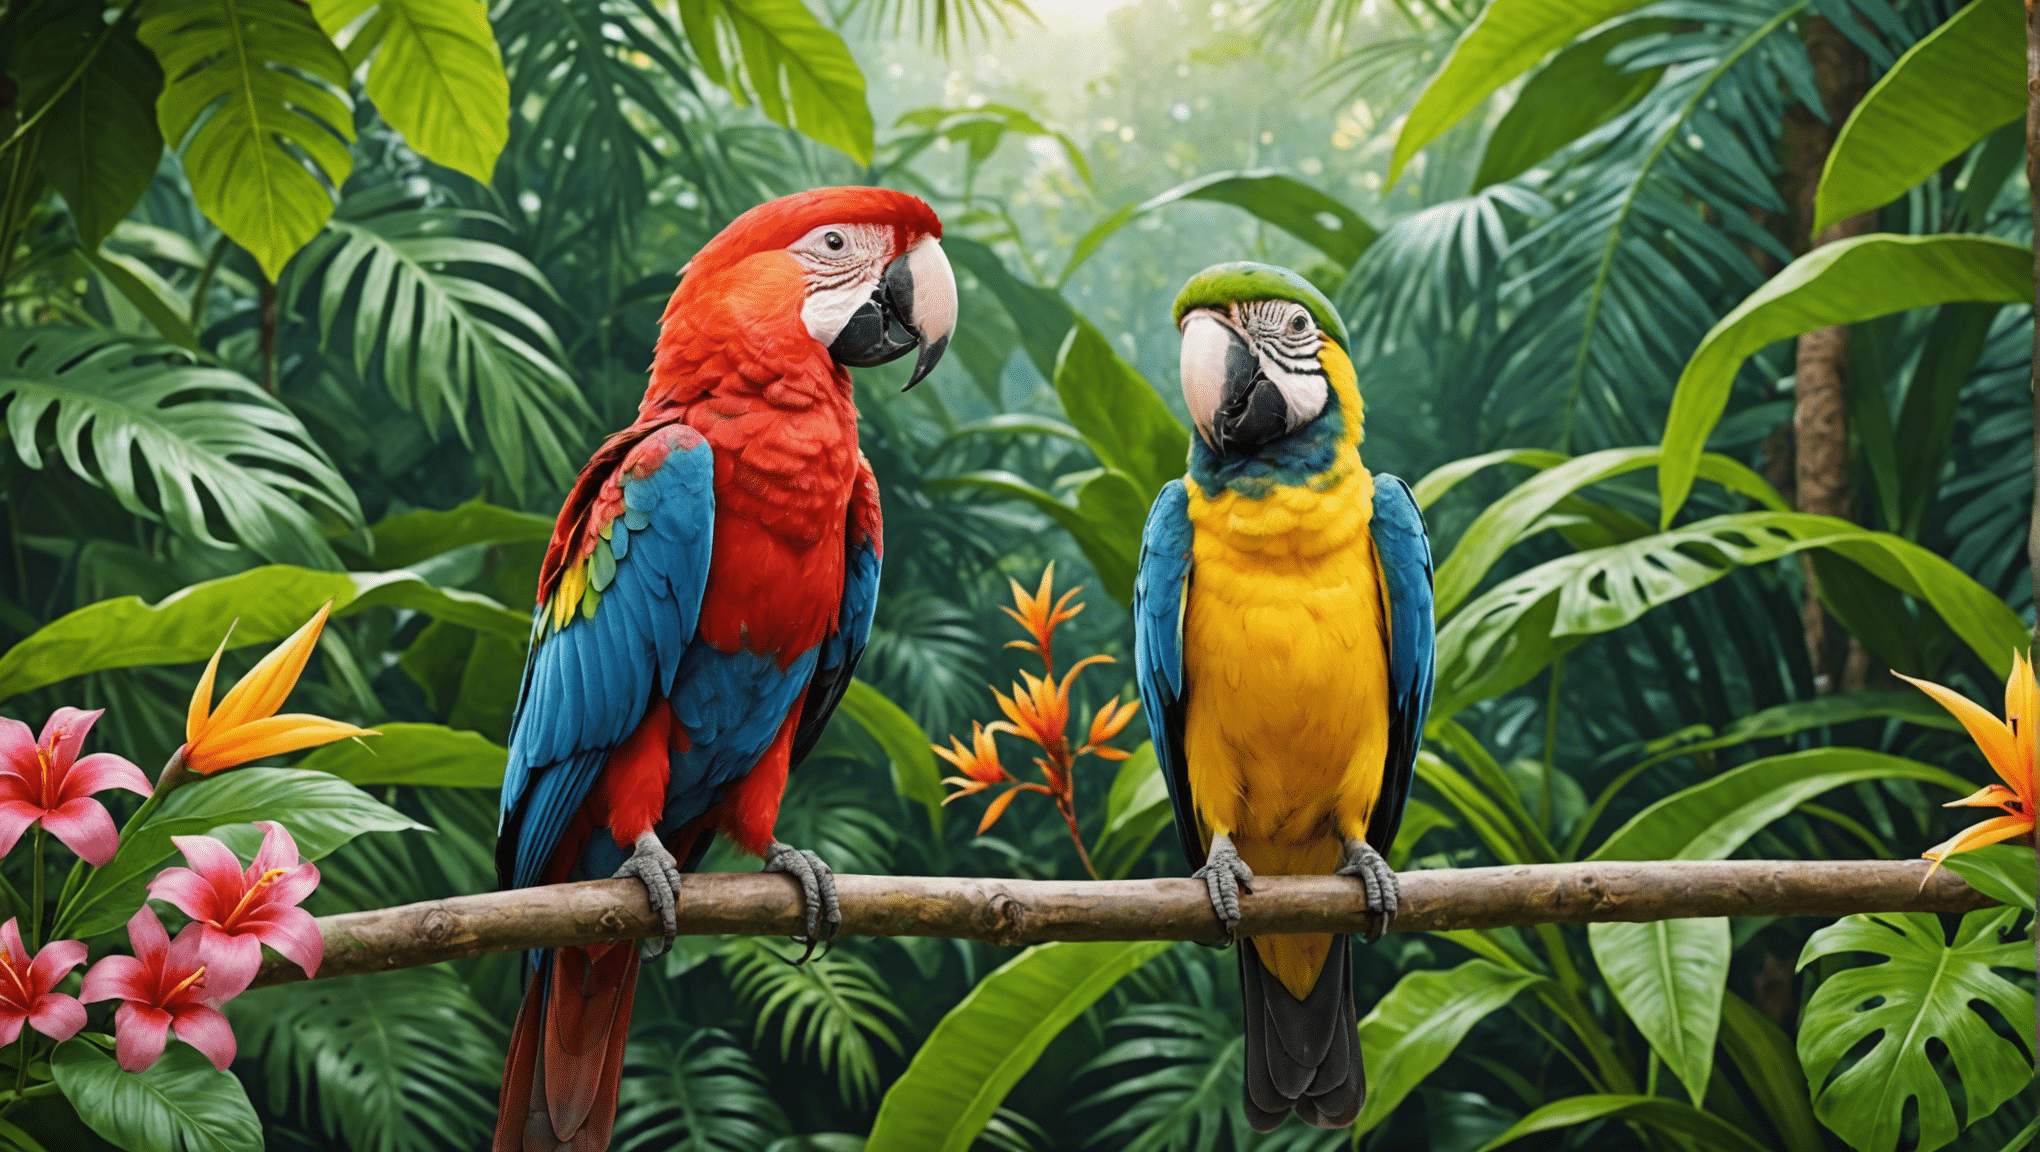 udforsk den fortryllende verden af tropiske fugle med vores fascinerende samling af artikler og billeder.